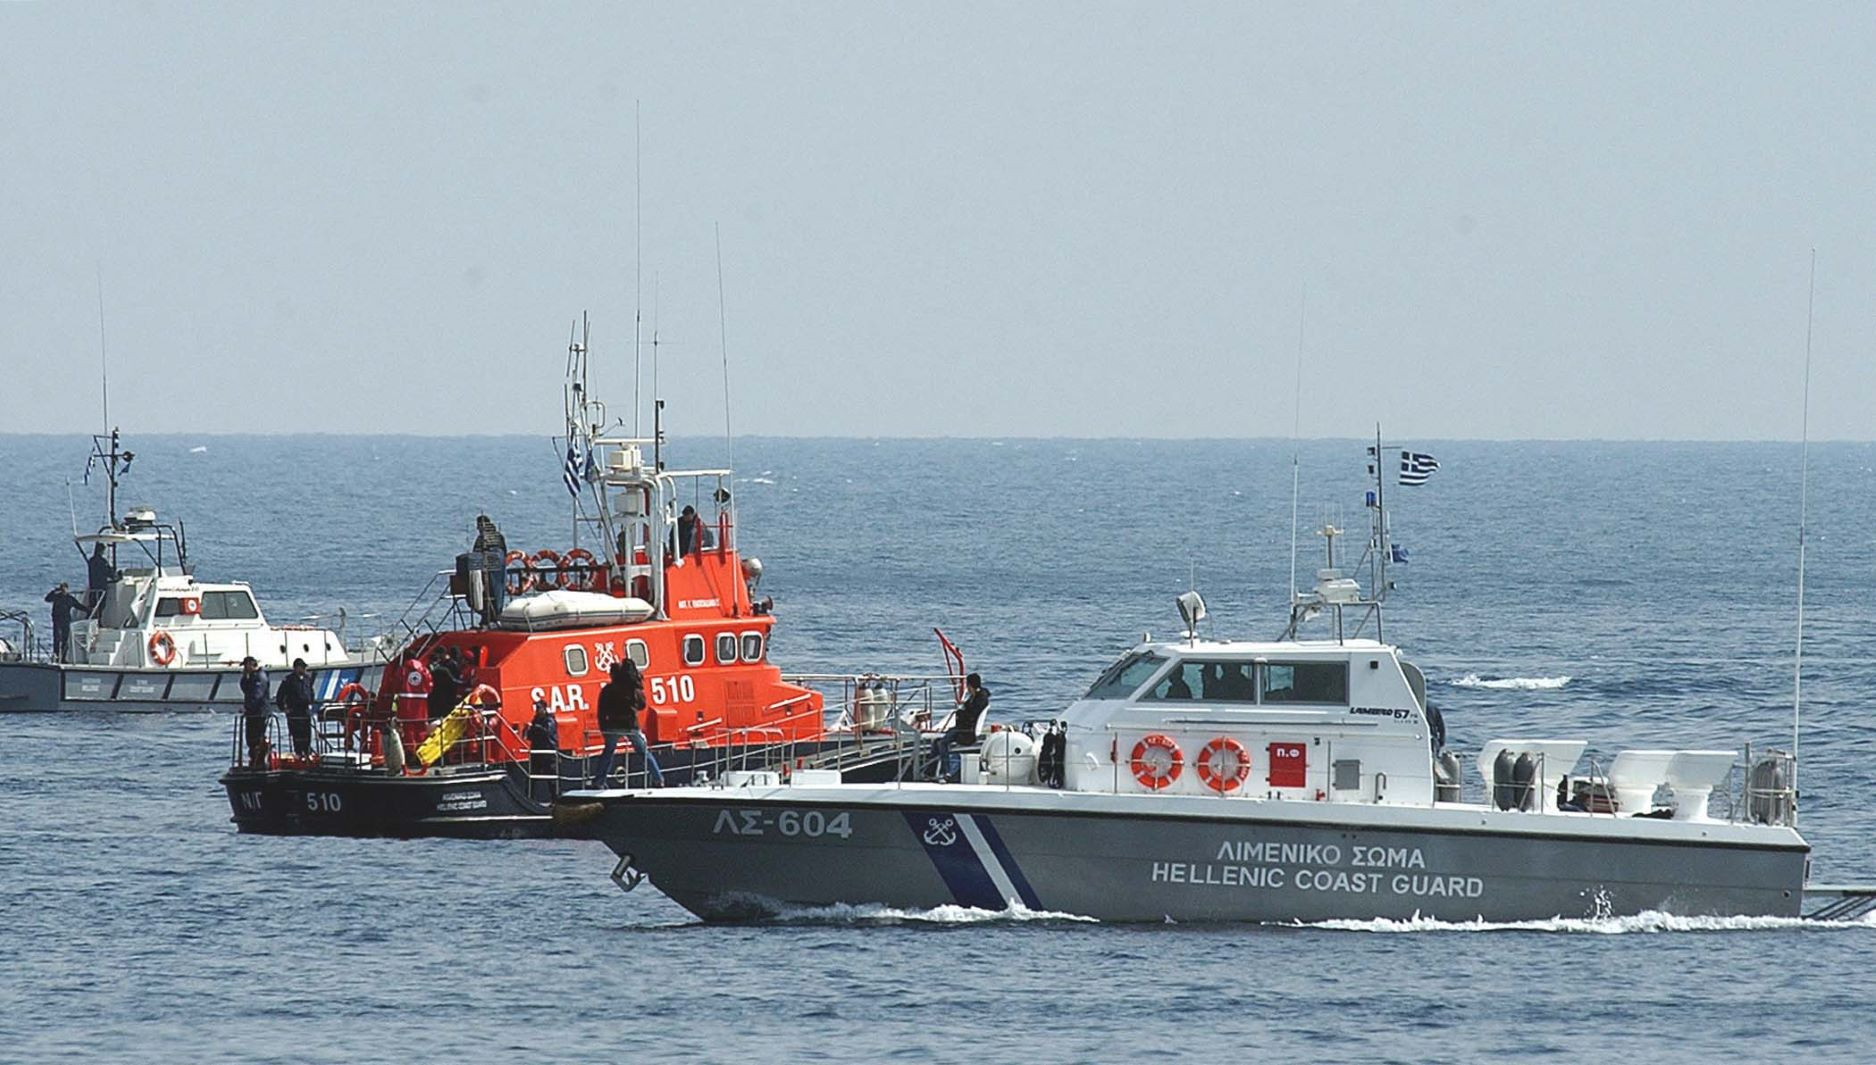 Νεκρός ανασύρθηκε από τη θαλάσσια περιοχή του Πόρτο Ράφτη 35χρονος ψαροντουφεκάς